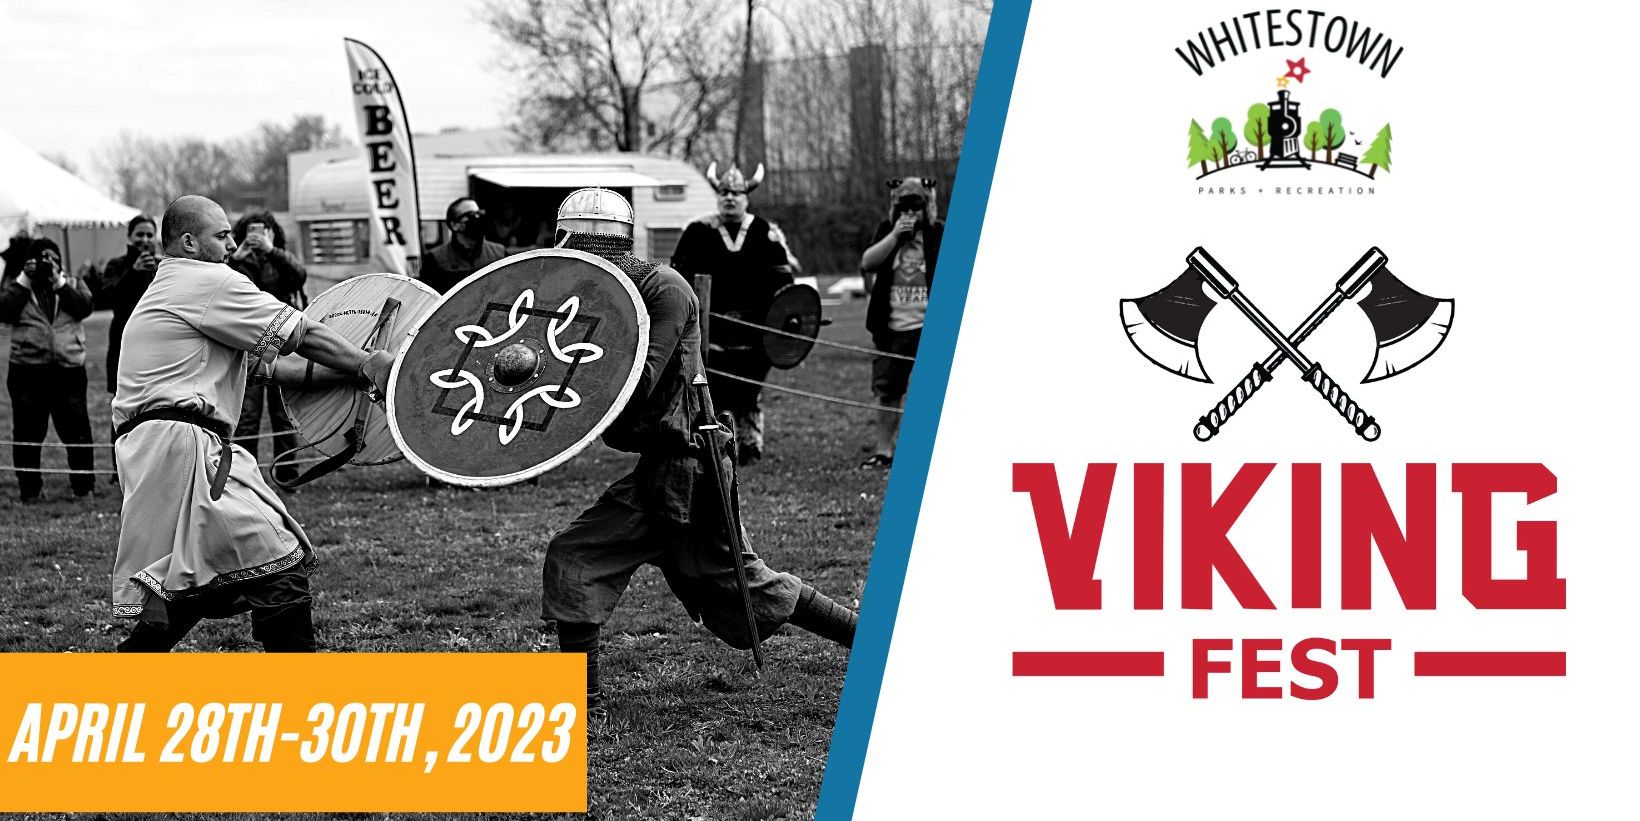 Viking Fest 2023 promotional image